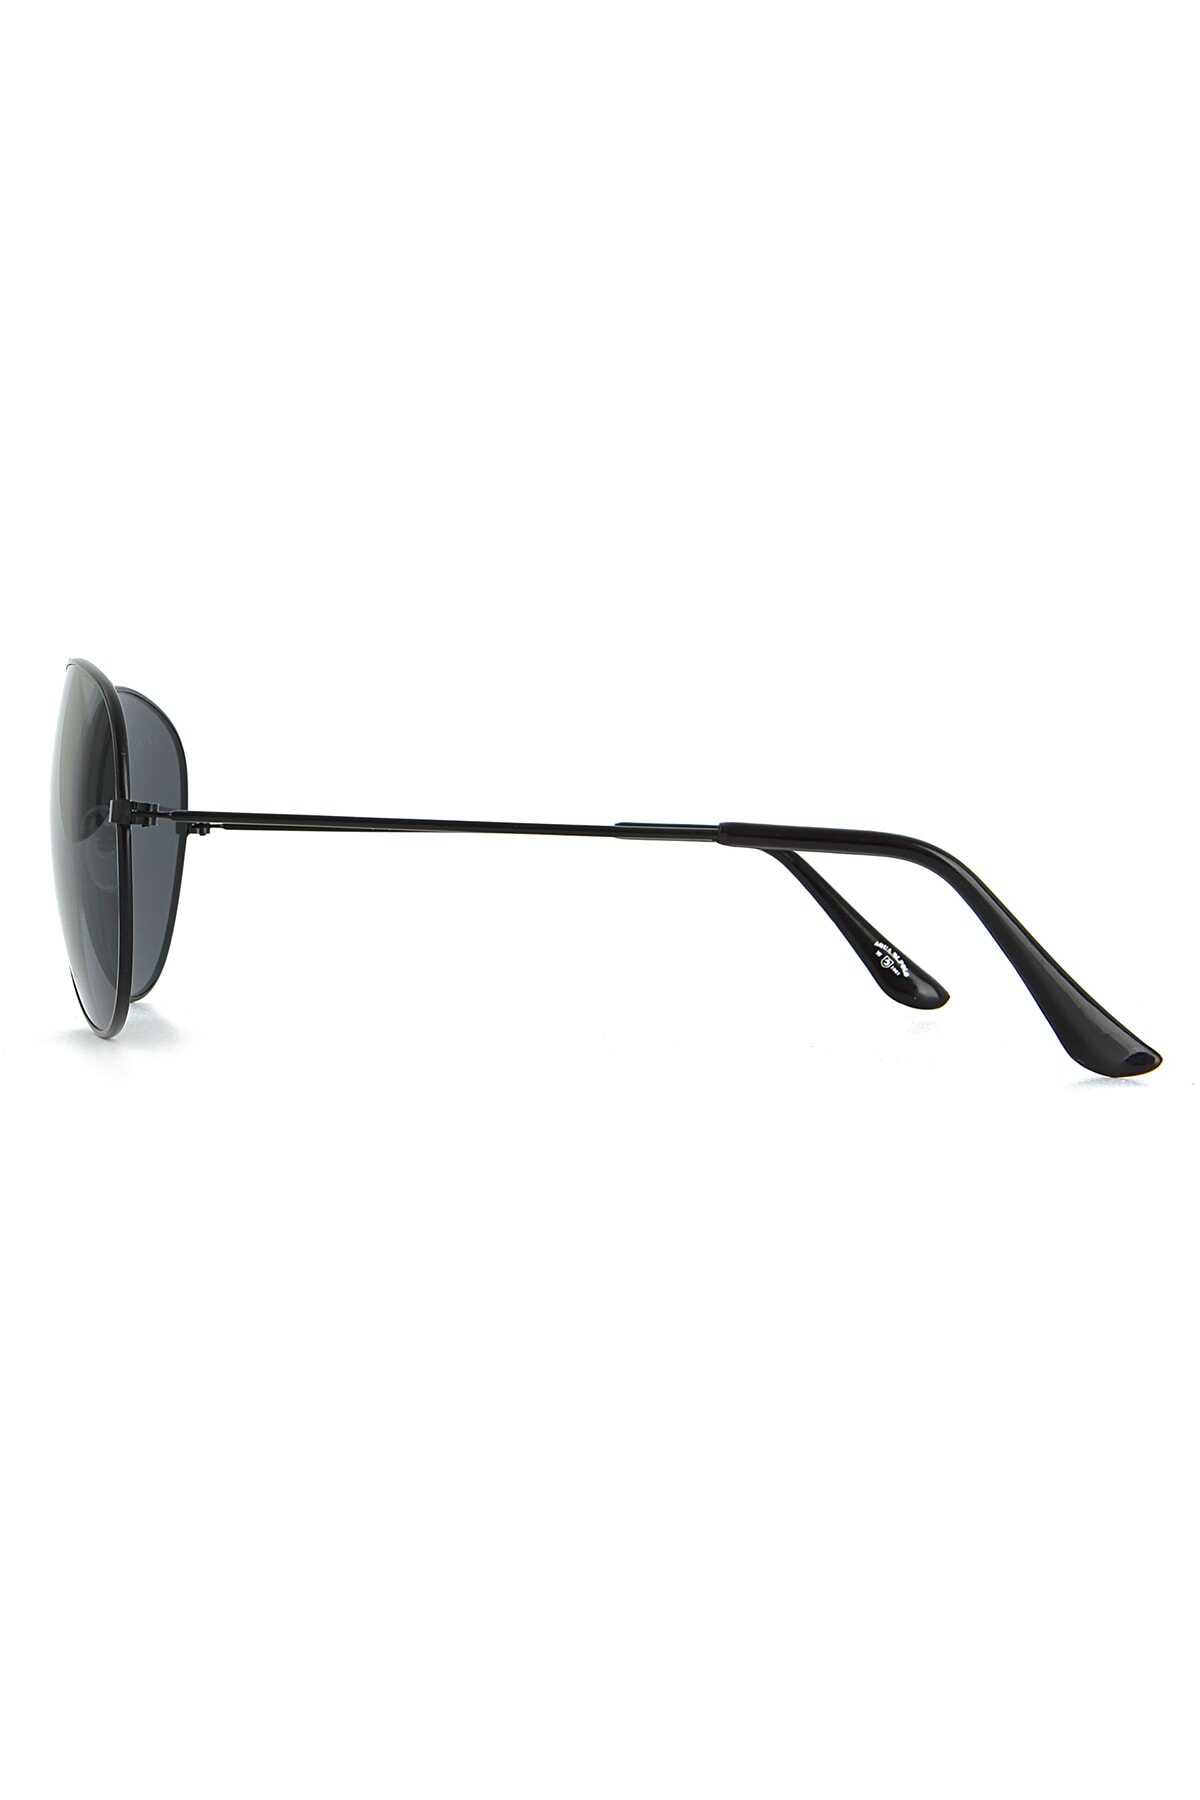 عینک آفتابی یونیسکس فلزی فریم نازک مشکی برند Aqua Di Polo